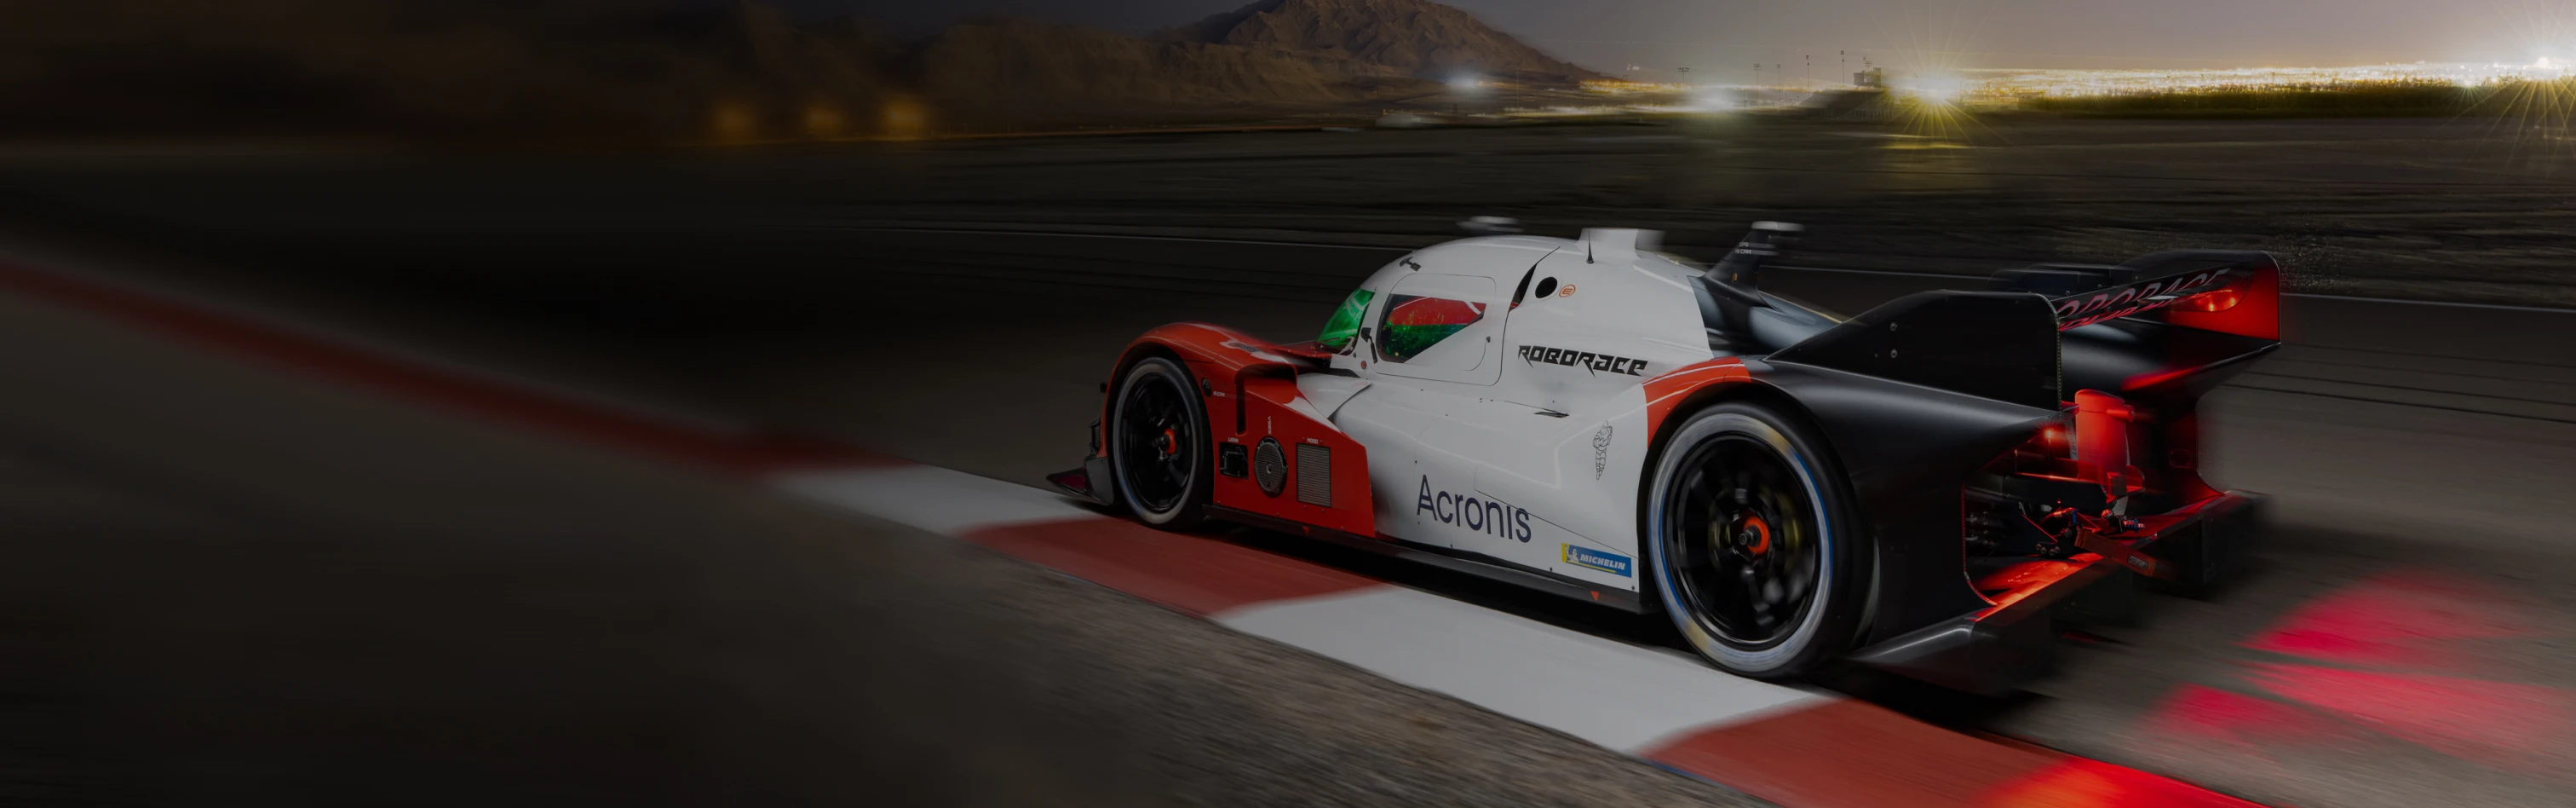 Autonomous mobility - racing car